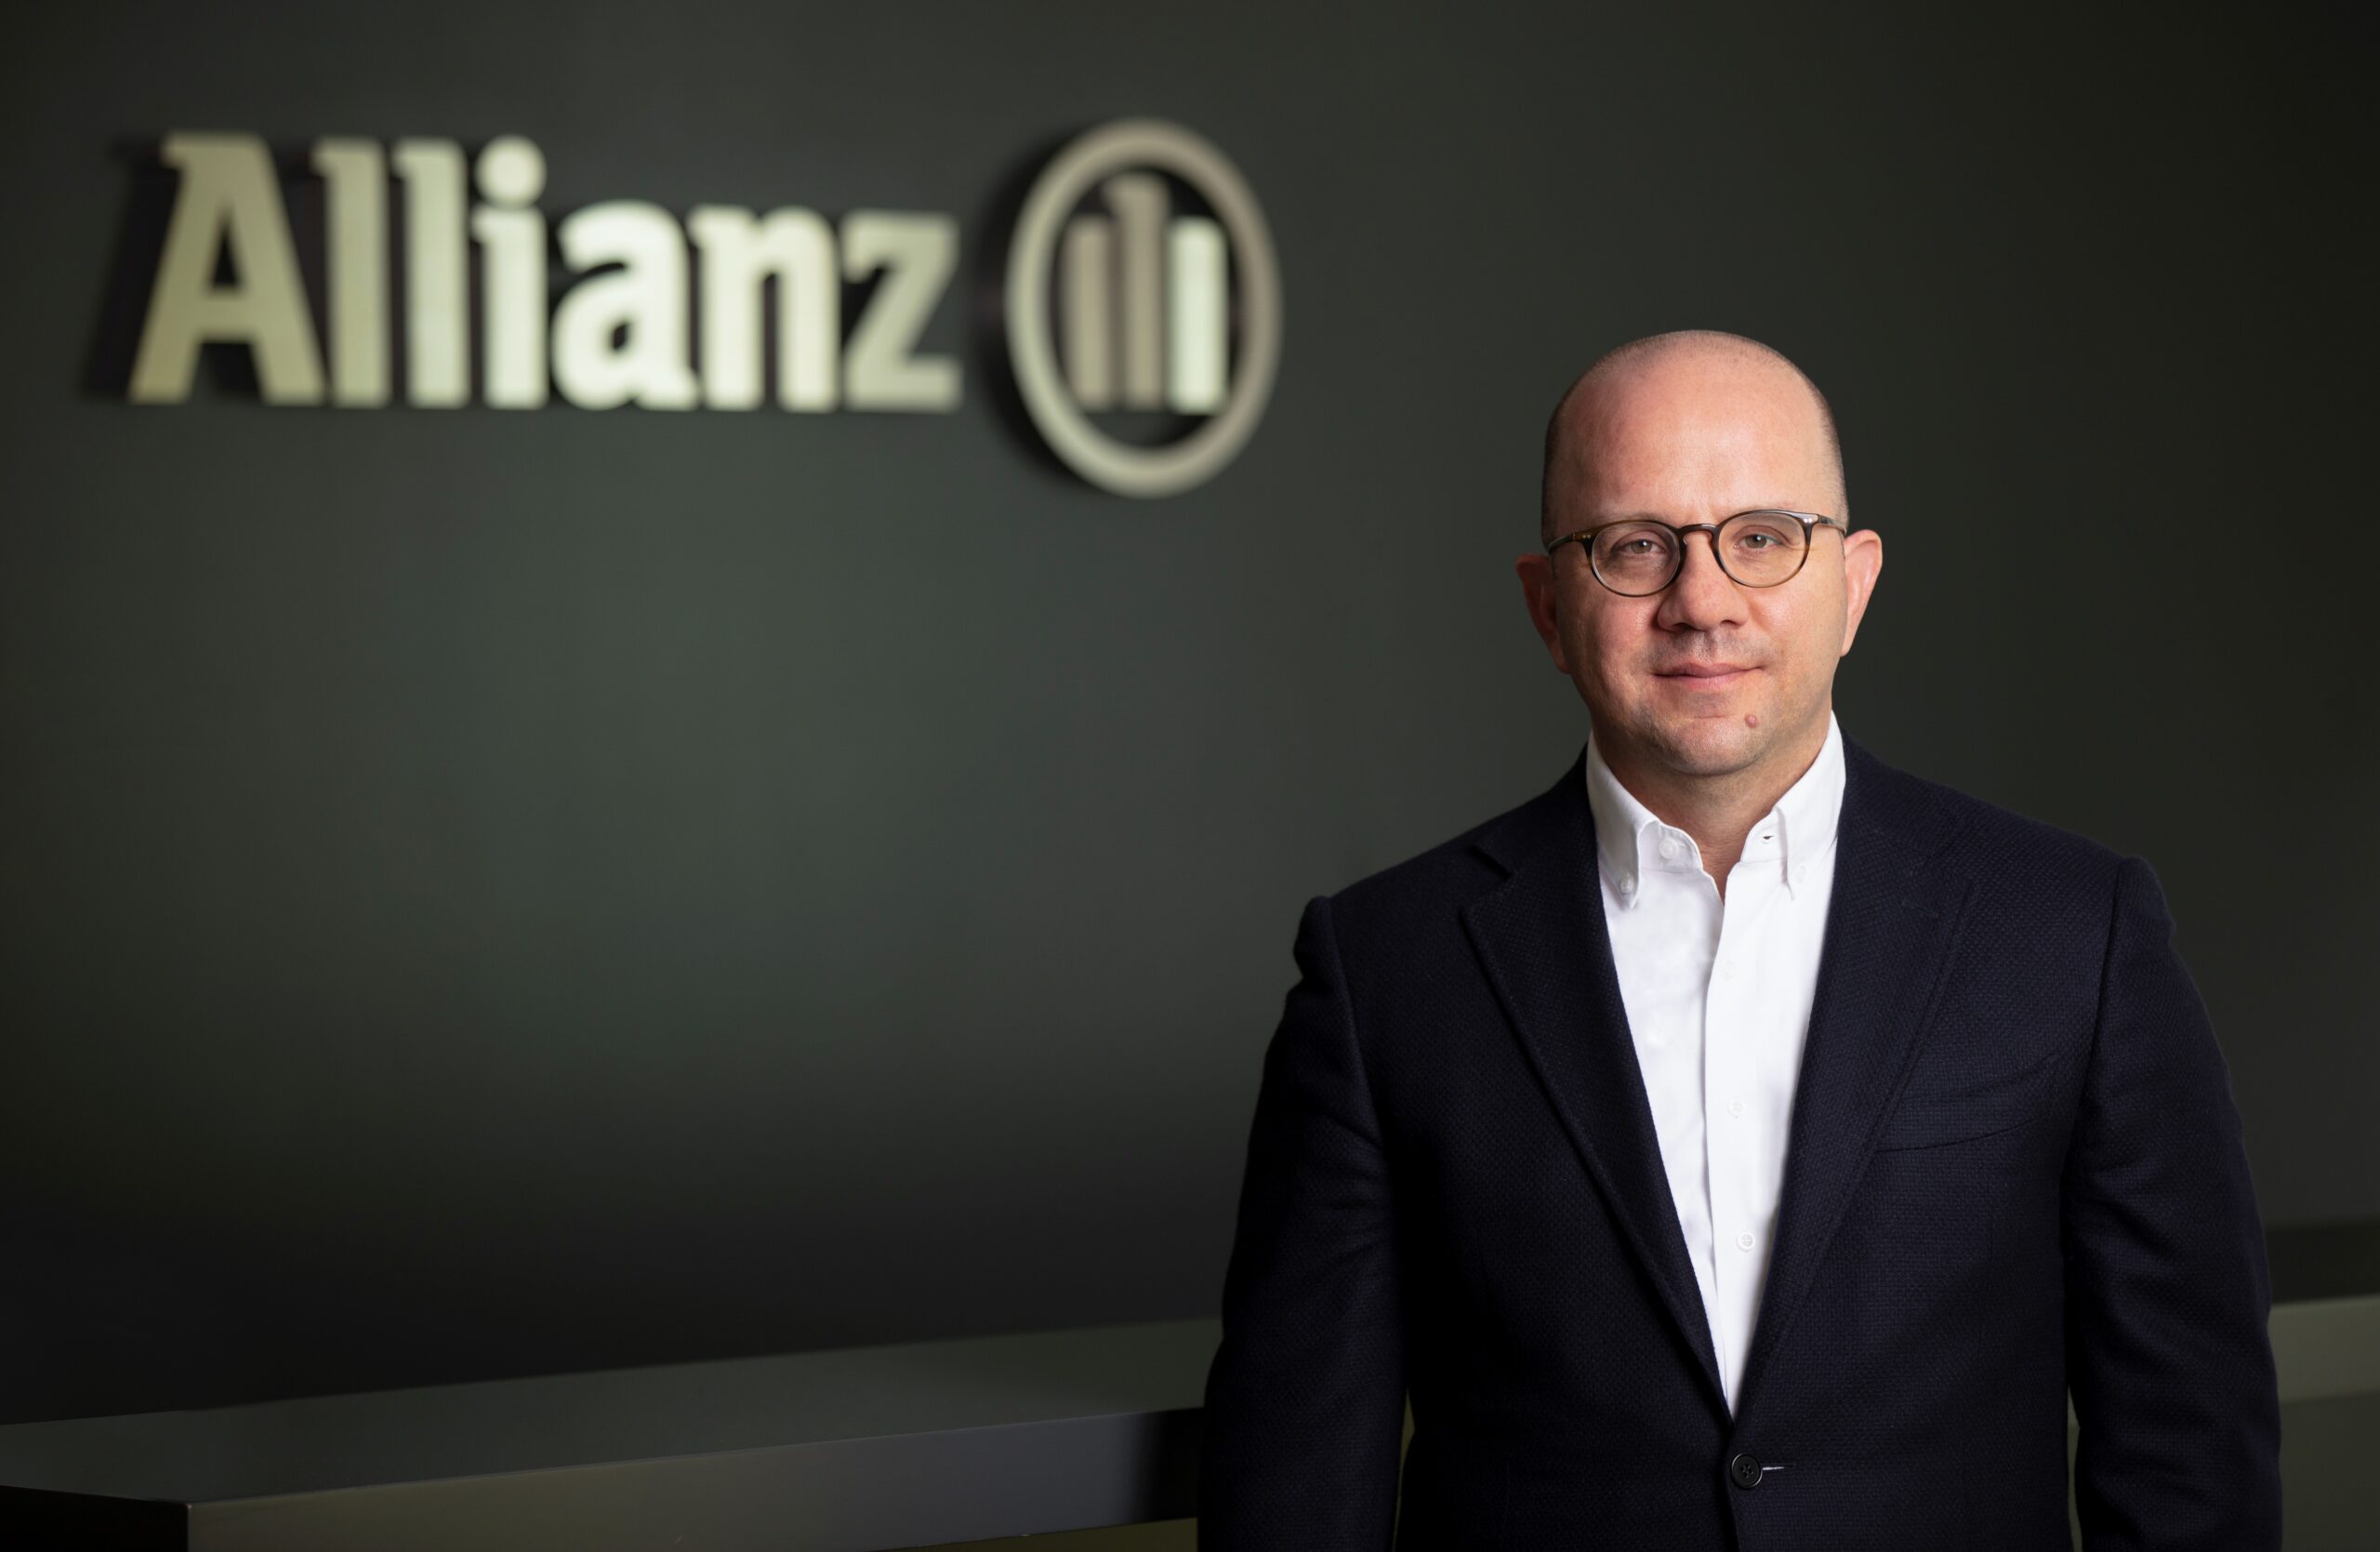 Allianz Türkiye, bireysel emeklilik müşterilerinin yatırım partneri olmak amacıyla Allianz Finansal Danışmanlık hizmetini hayata geçiriyor